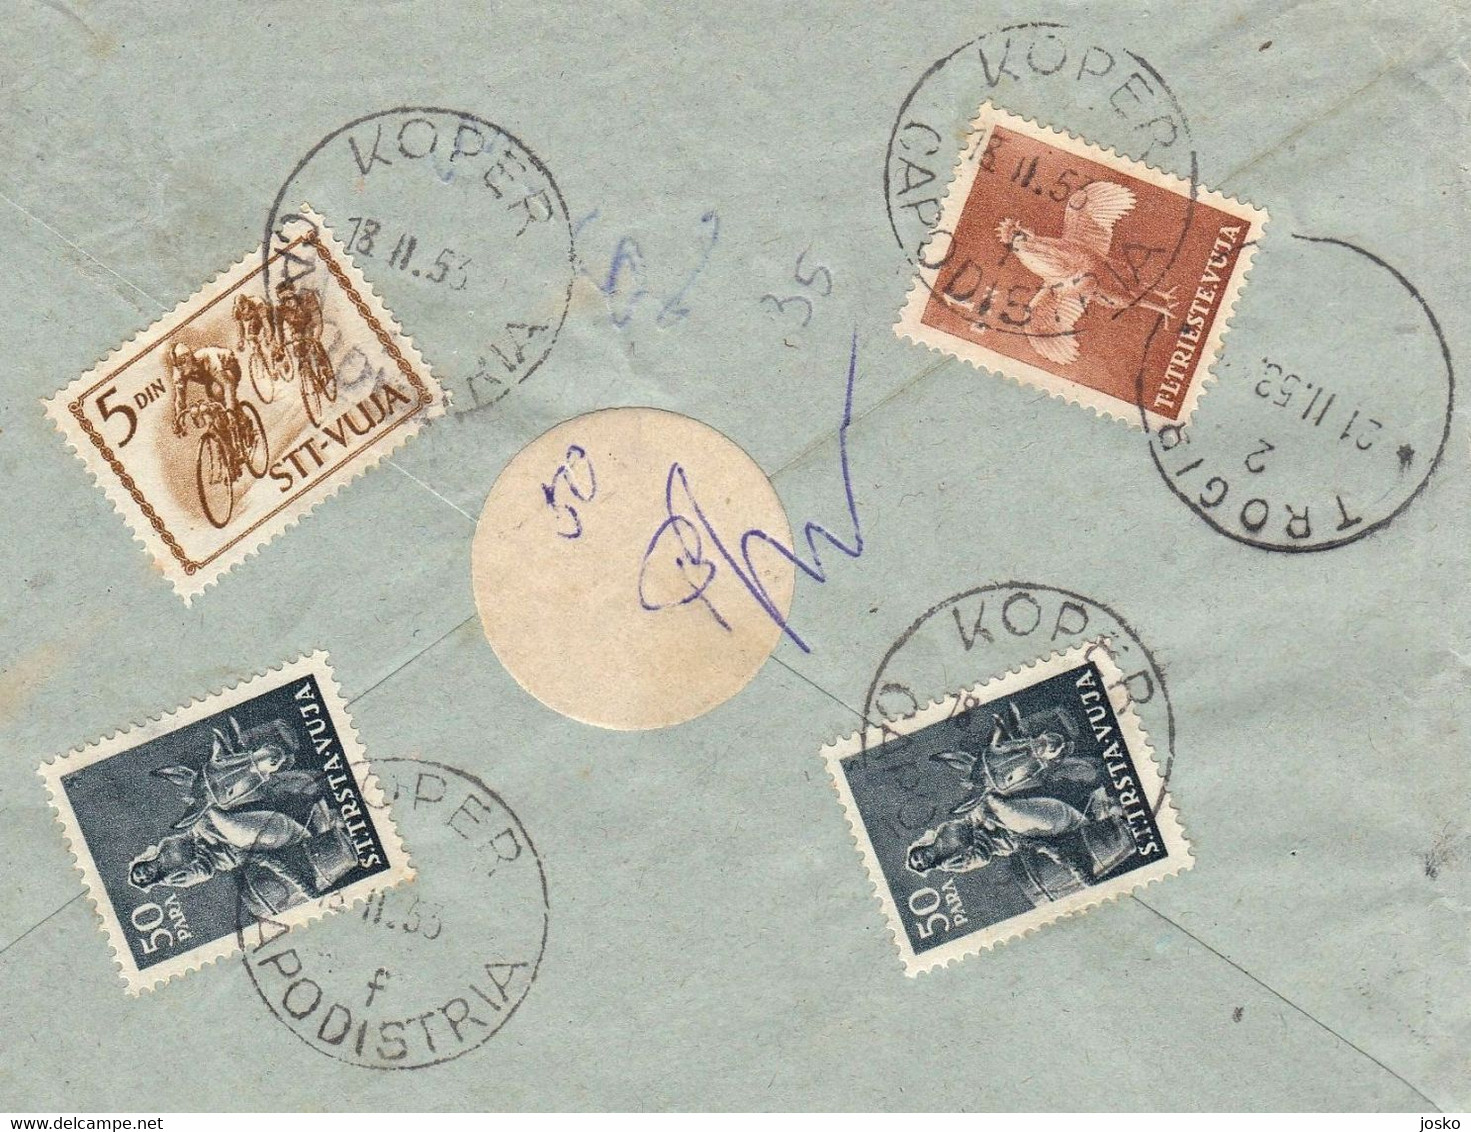 TRIESTE ZONA B STT VUJNA VUJA Registered letter travelled 1953 Koper Capodistria Yugoslavia Slovenia Istria Italy Italia